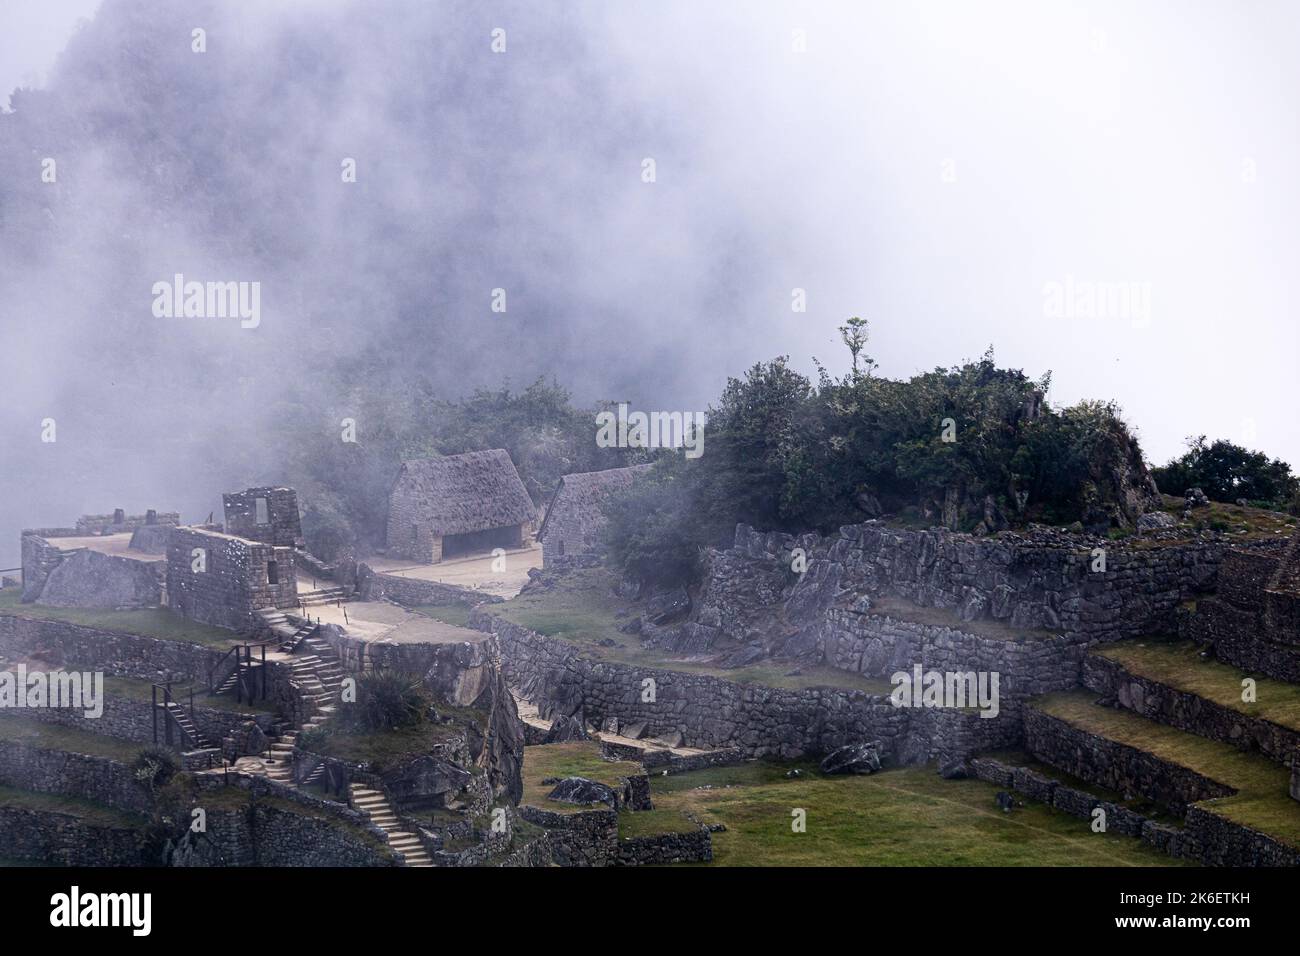 Retour dans l'ancienne civilisation découverte du Machu Picchu. Prise lors d'une journée nuageuse, cette image tente de maîtriser une vie passée. Banque D'Images